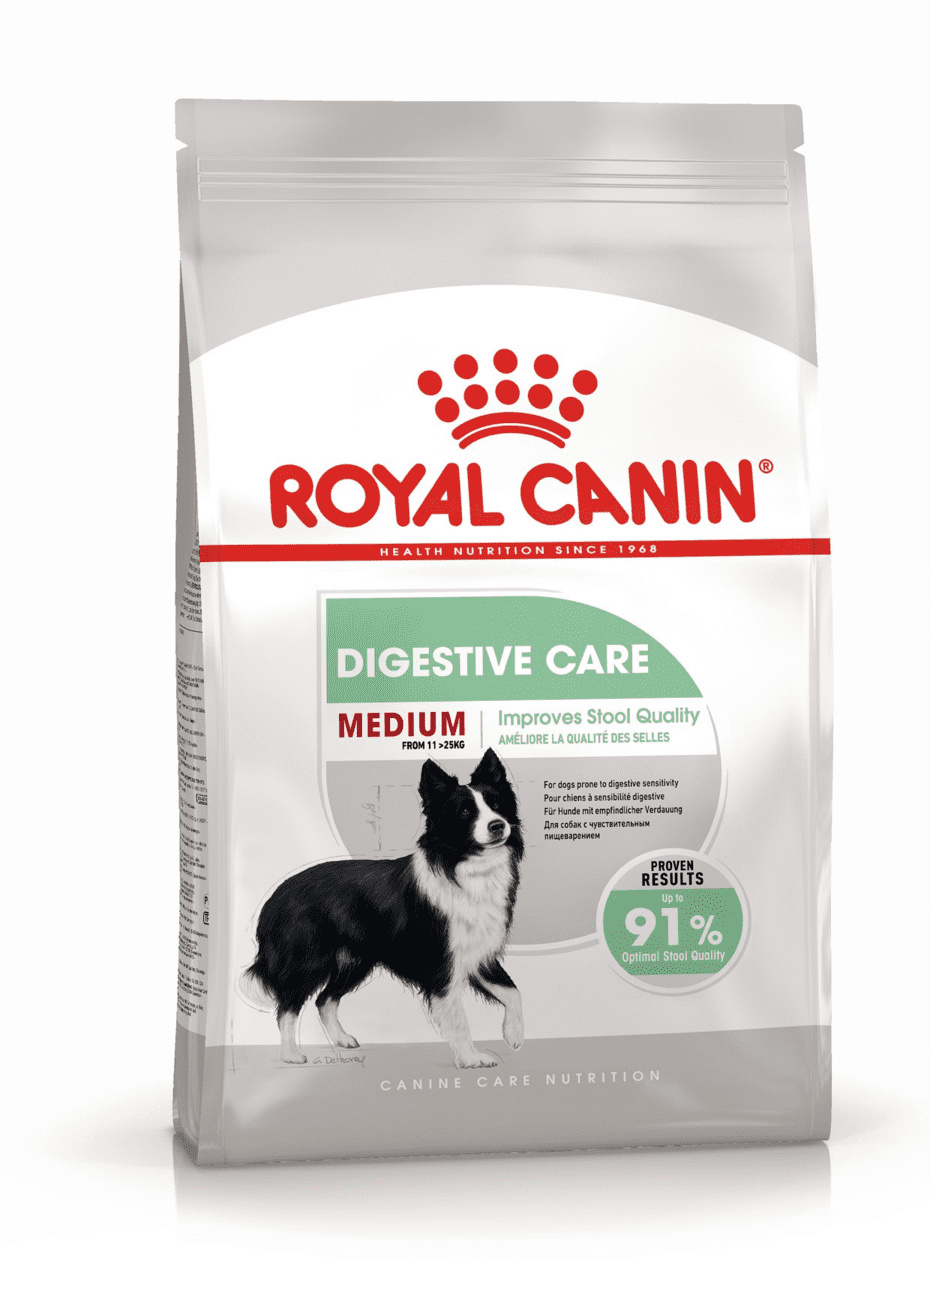 Royal Canin Корм Royal Canin корм для собак средних пород с чувствительным пищеварением (12 кг) royal canin maxi digestive care сухой корм для собак крупных пород с чувствительным пищеварением 12 кг